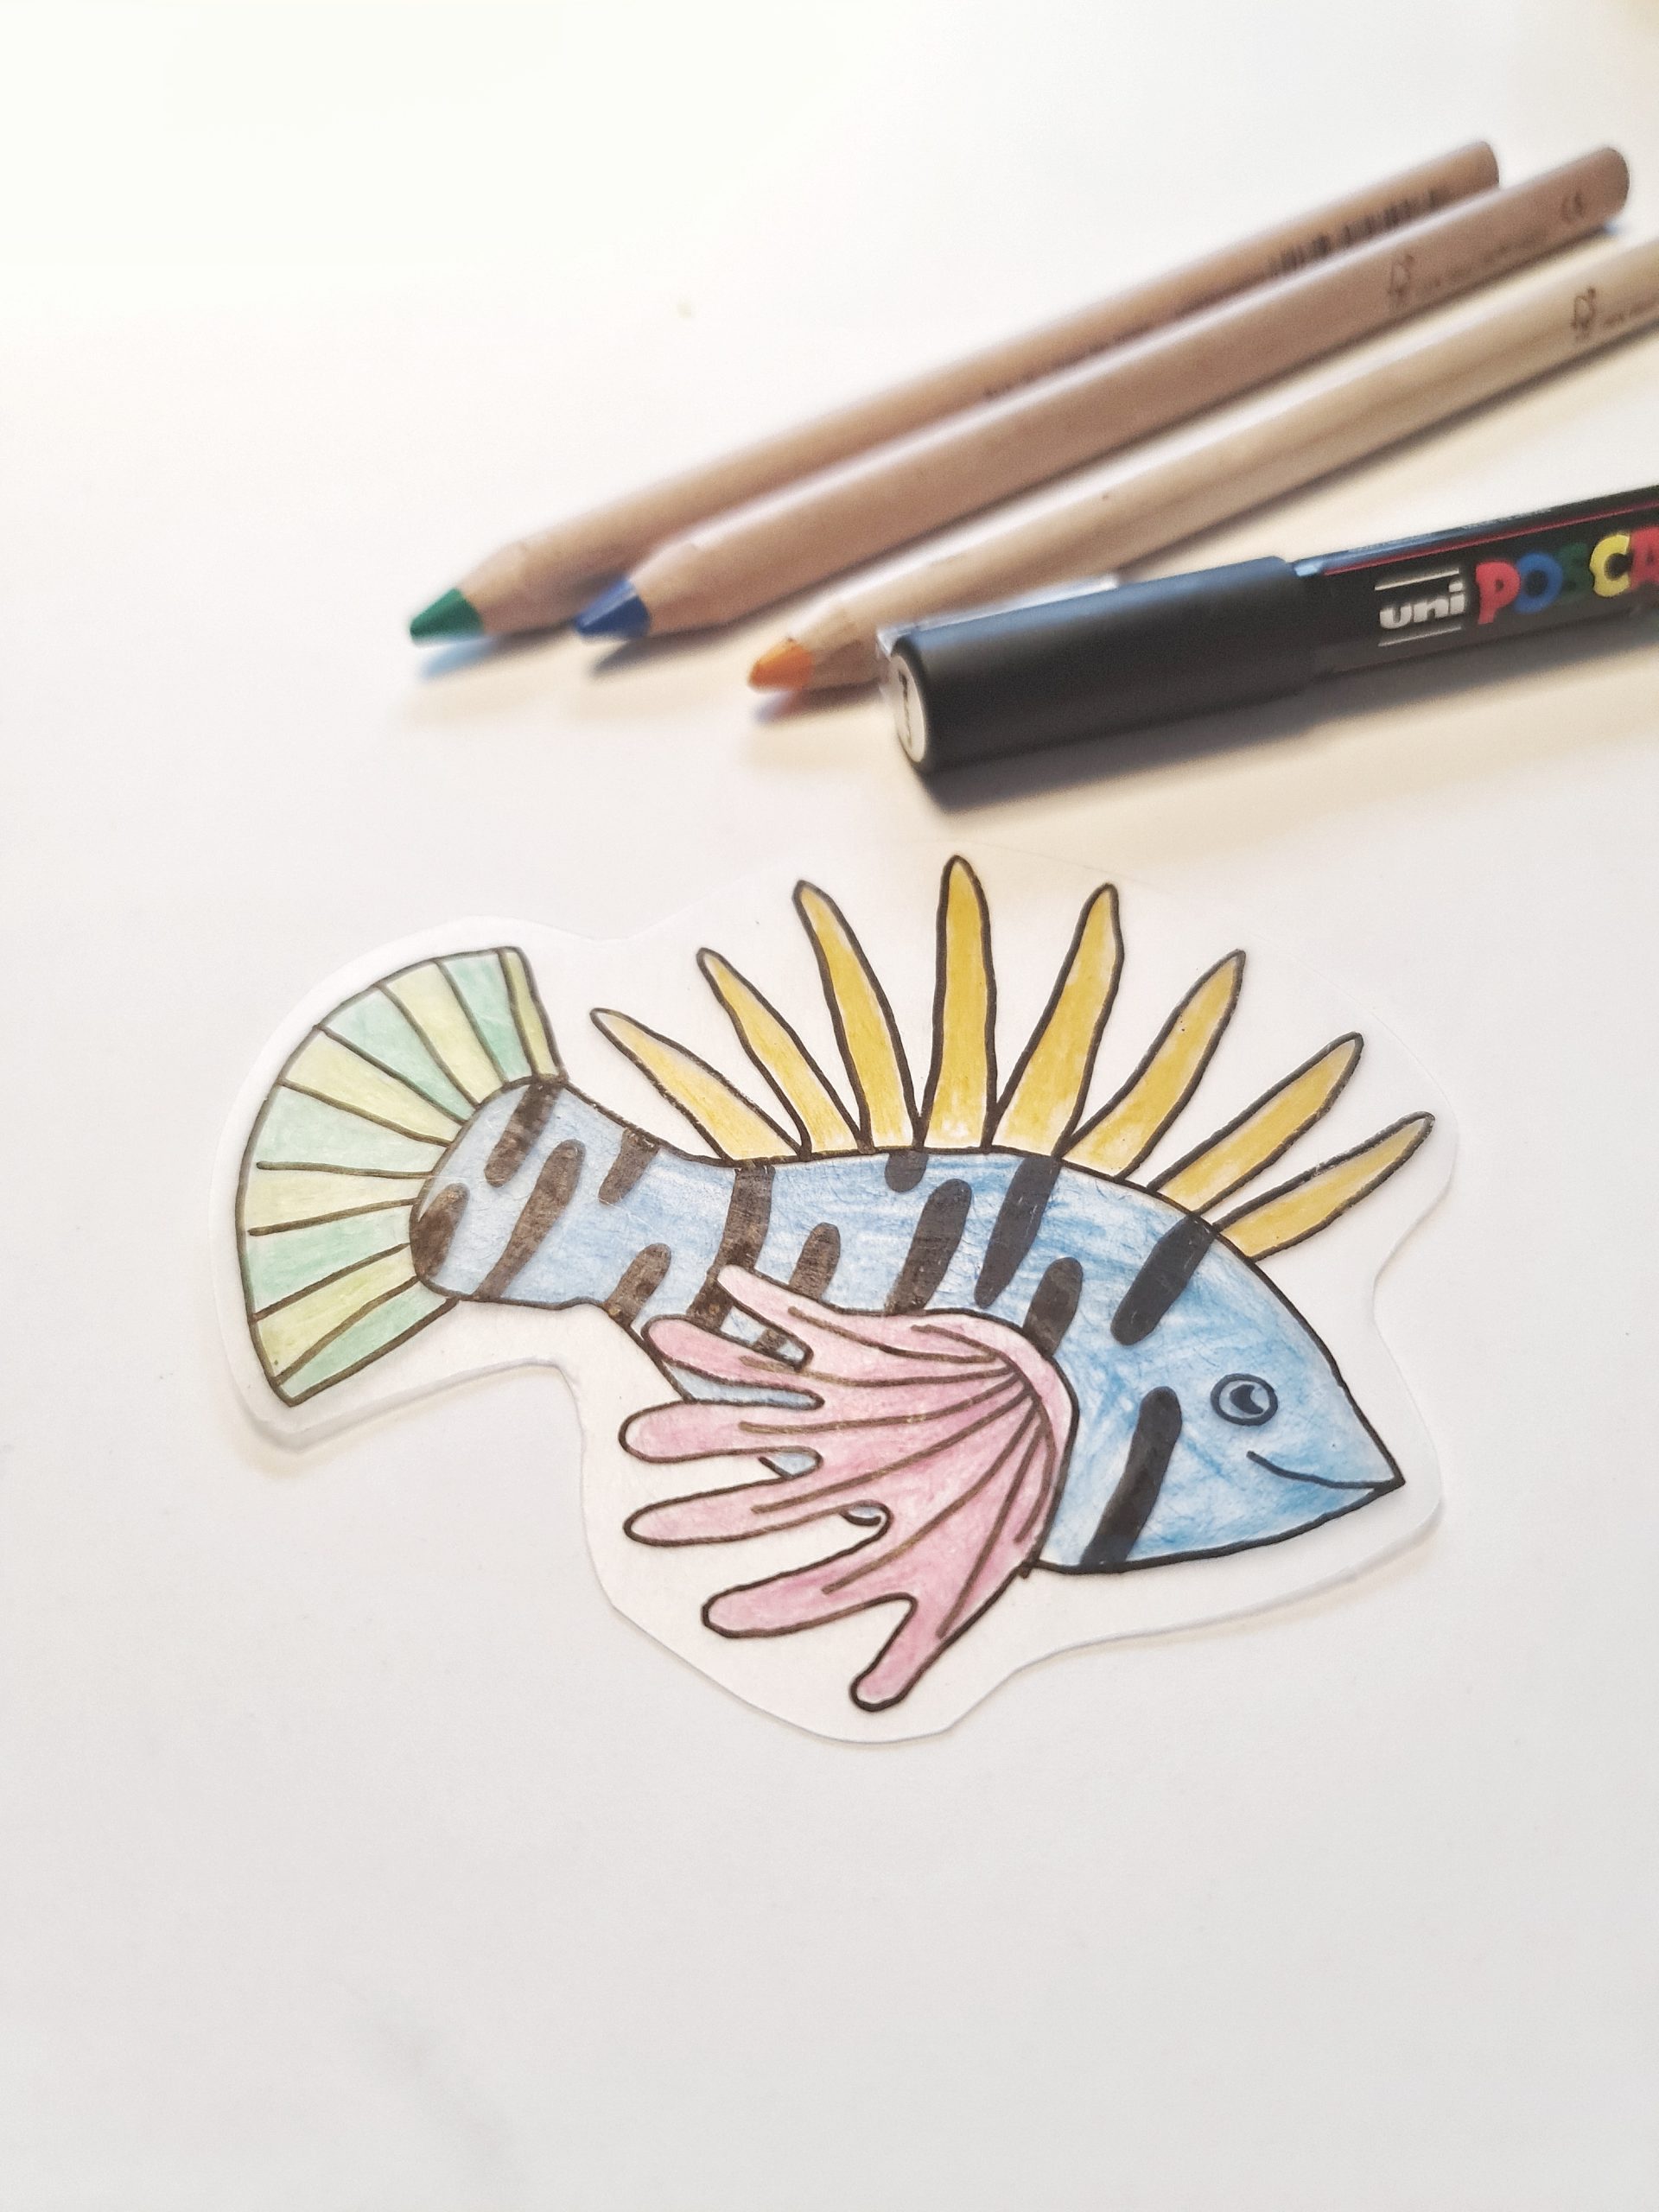 Fisk tegnet på krympeplastik med farveblyanter, tusch og skabelon fra kreakassen til børn.